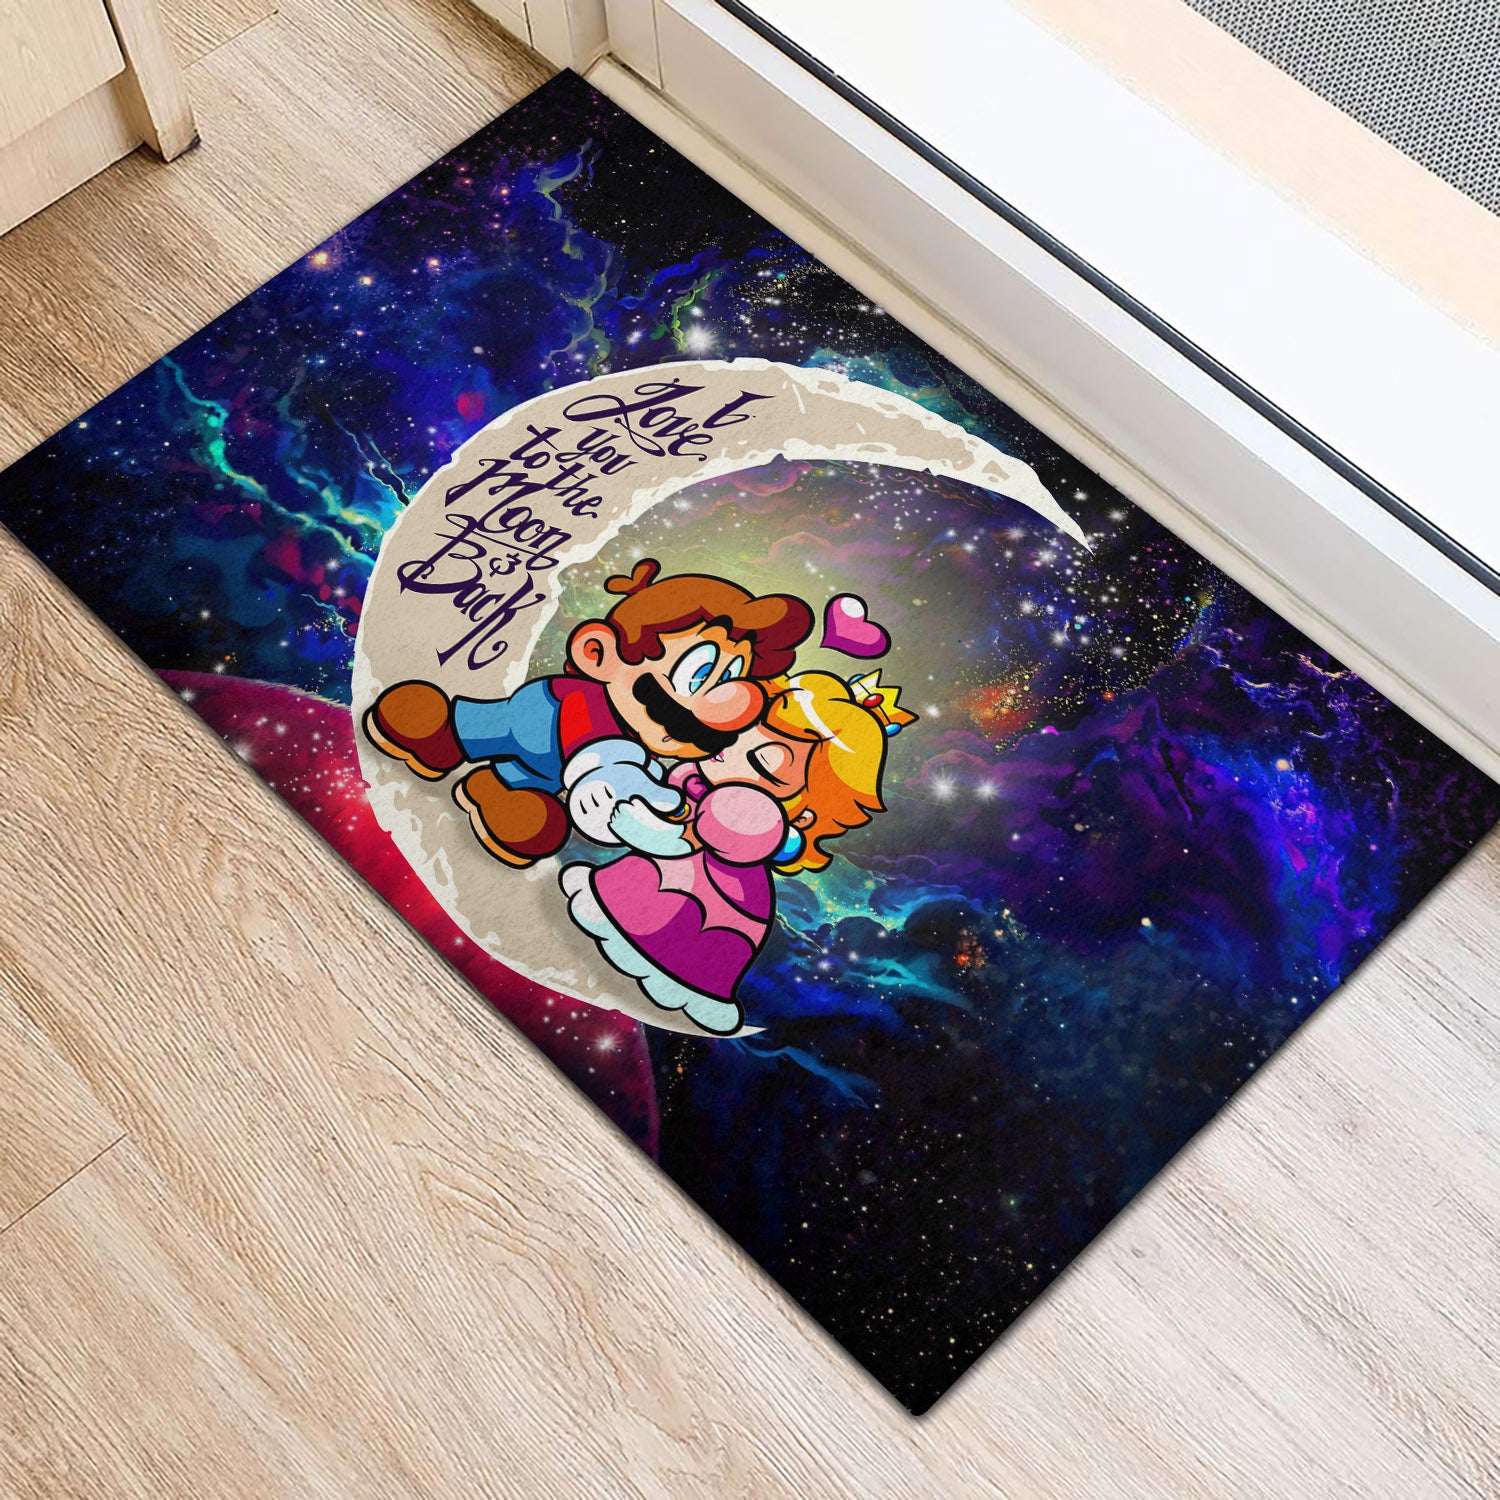 Mario Couple Love You To The Moon Galaxy Back Door Mats Home Decor